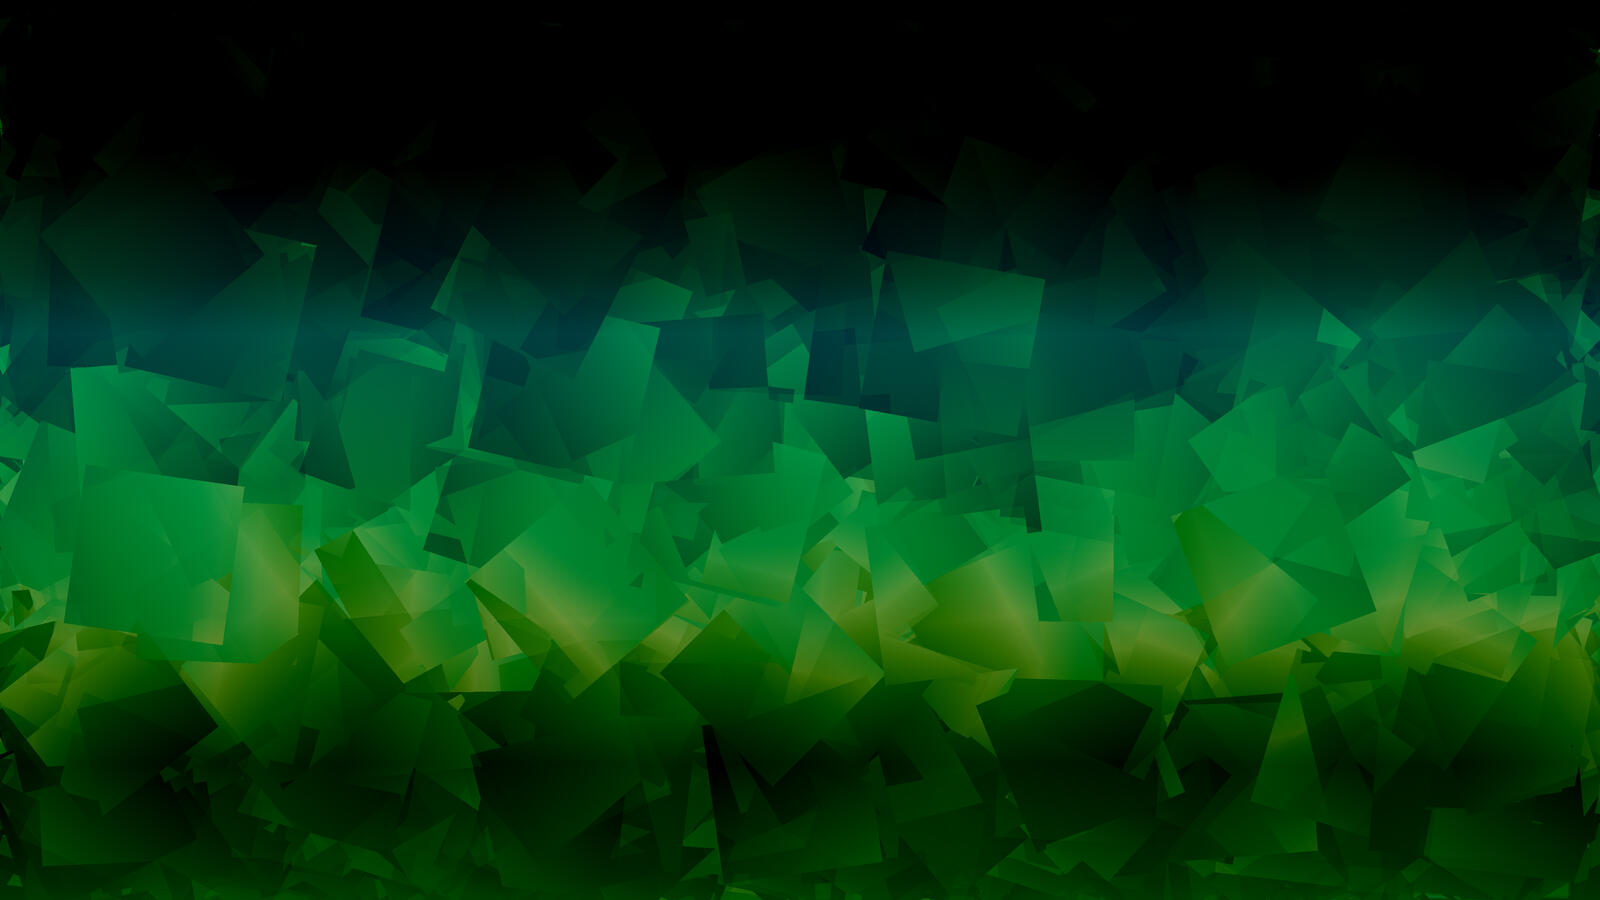 Бесплатное фото Зеленая абстракция с изображением прямоугольных фигур